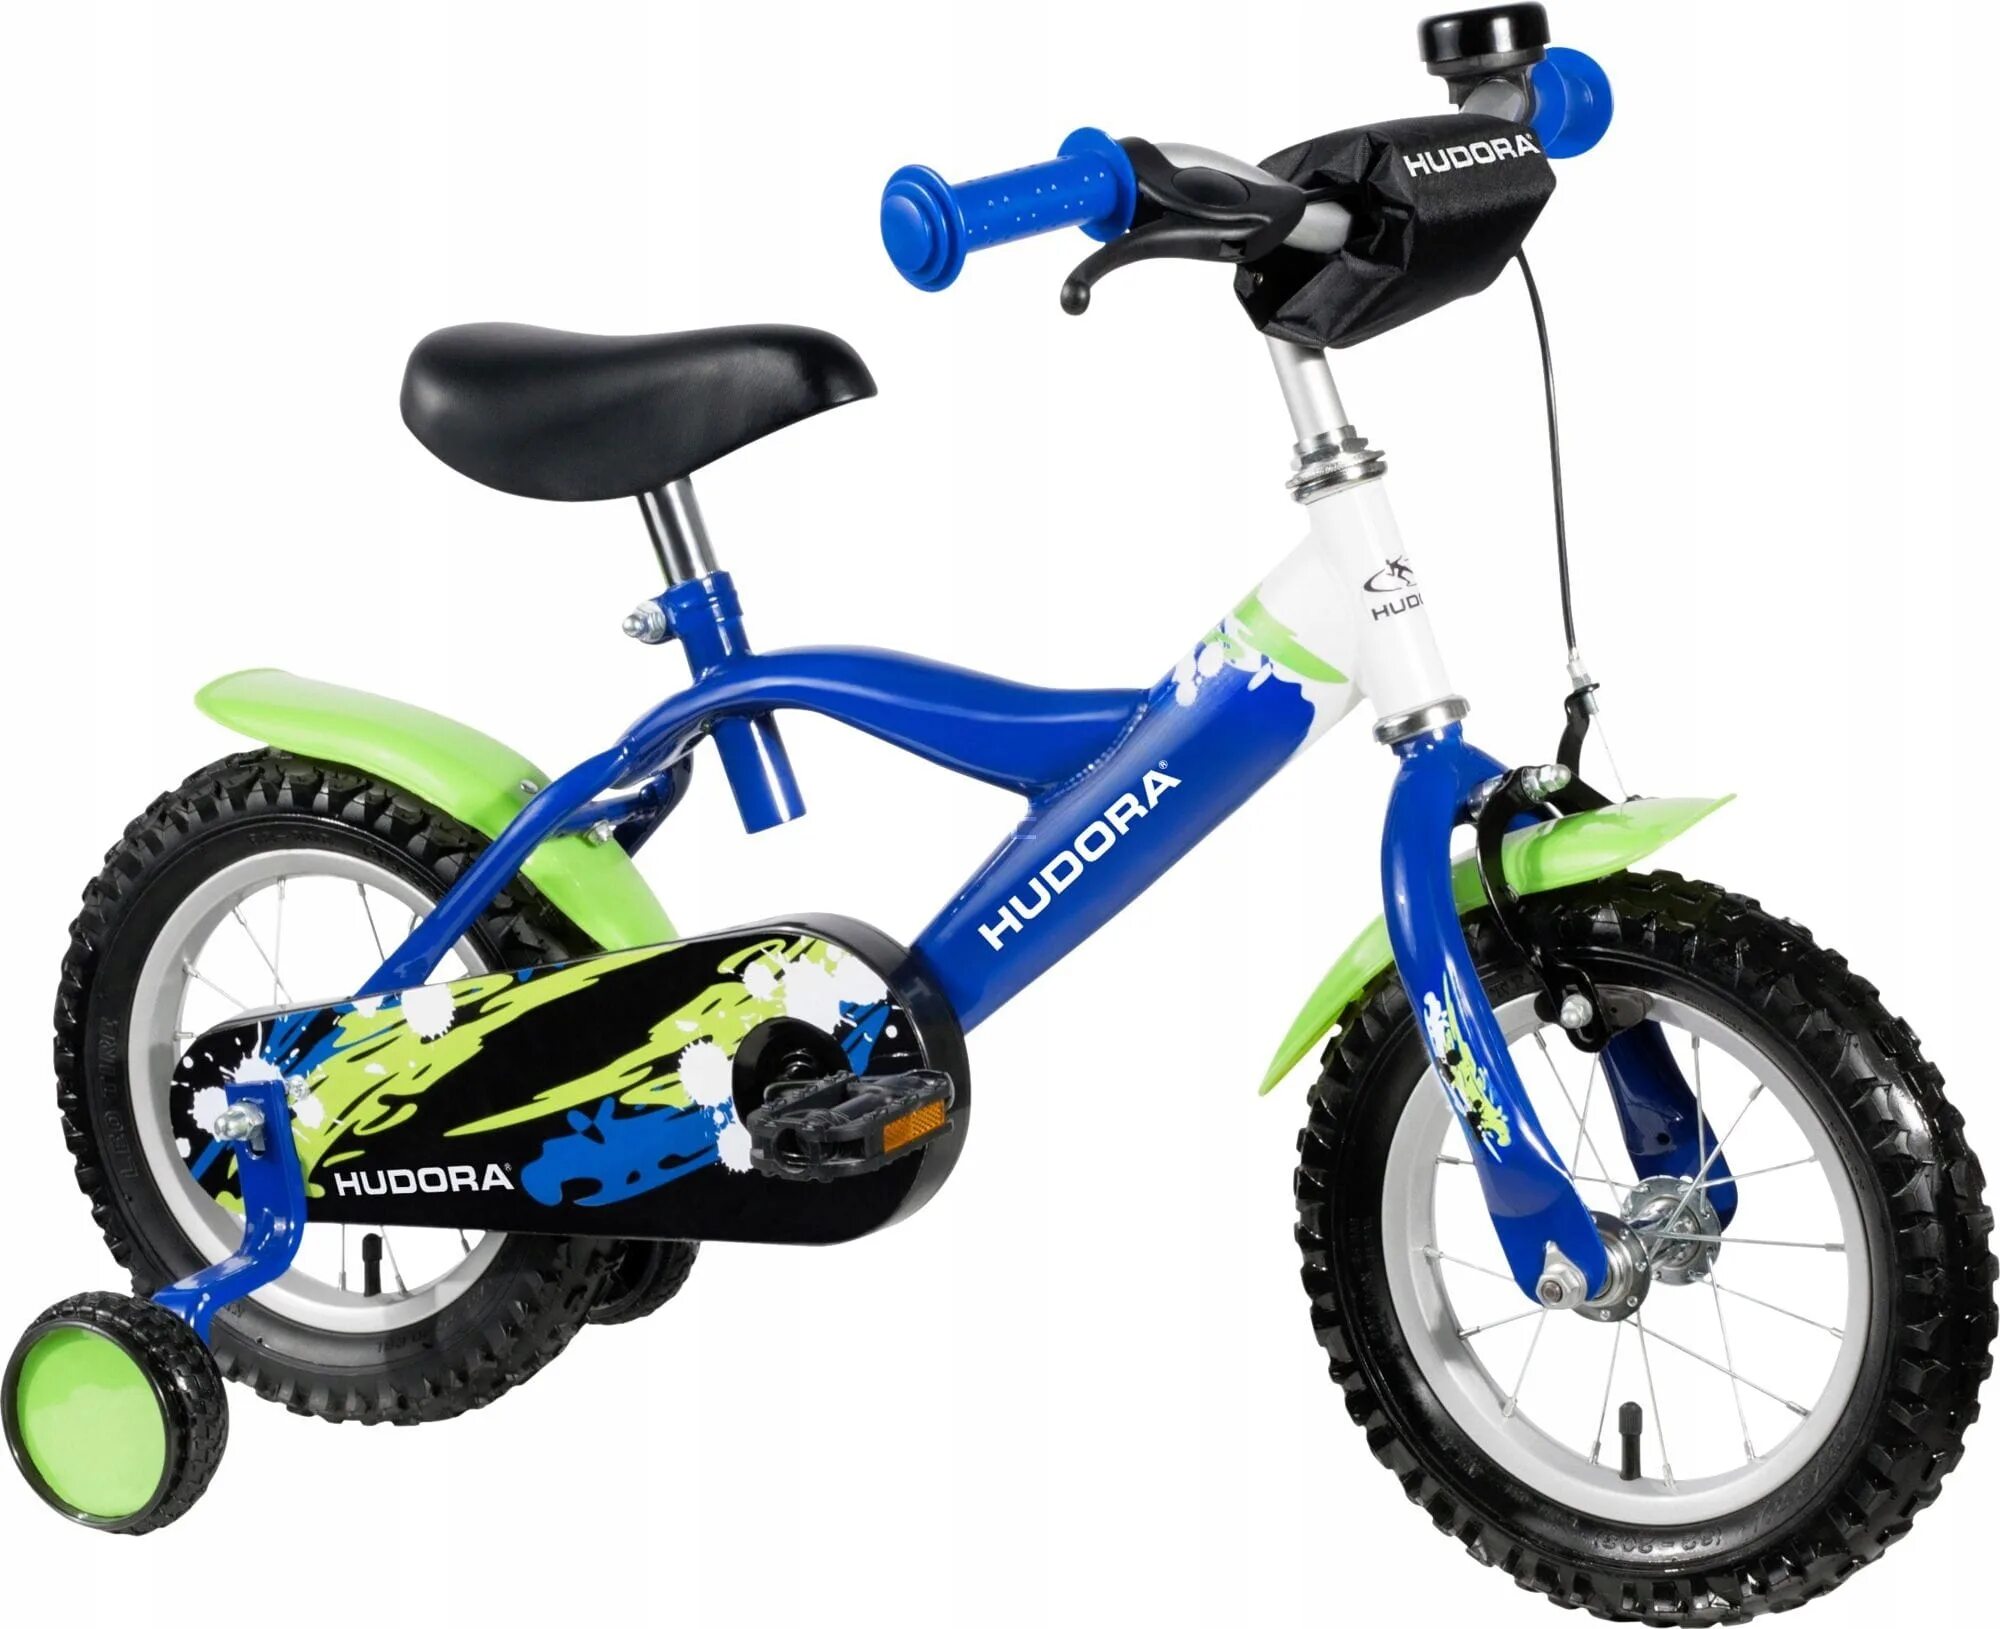 Велосипед 12 дюймов на какой. Велосипед Hudora 12. Green Bike велосипед 12 дюймов. Велосипед 12 дюймов синий. Велосипед 12 дюймов зеленый.